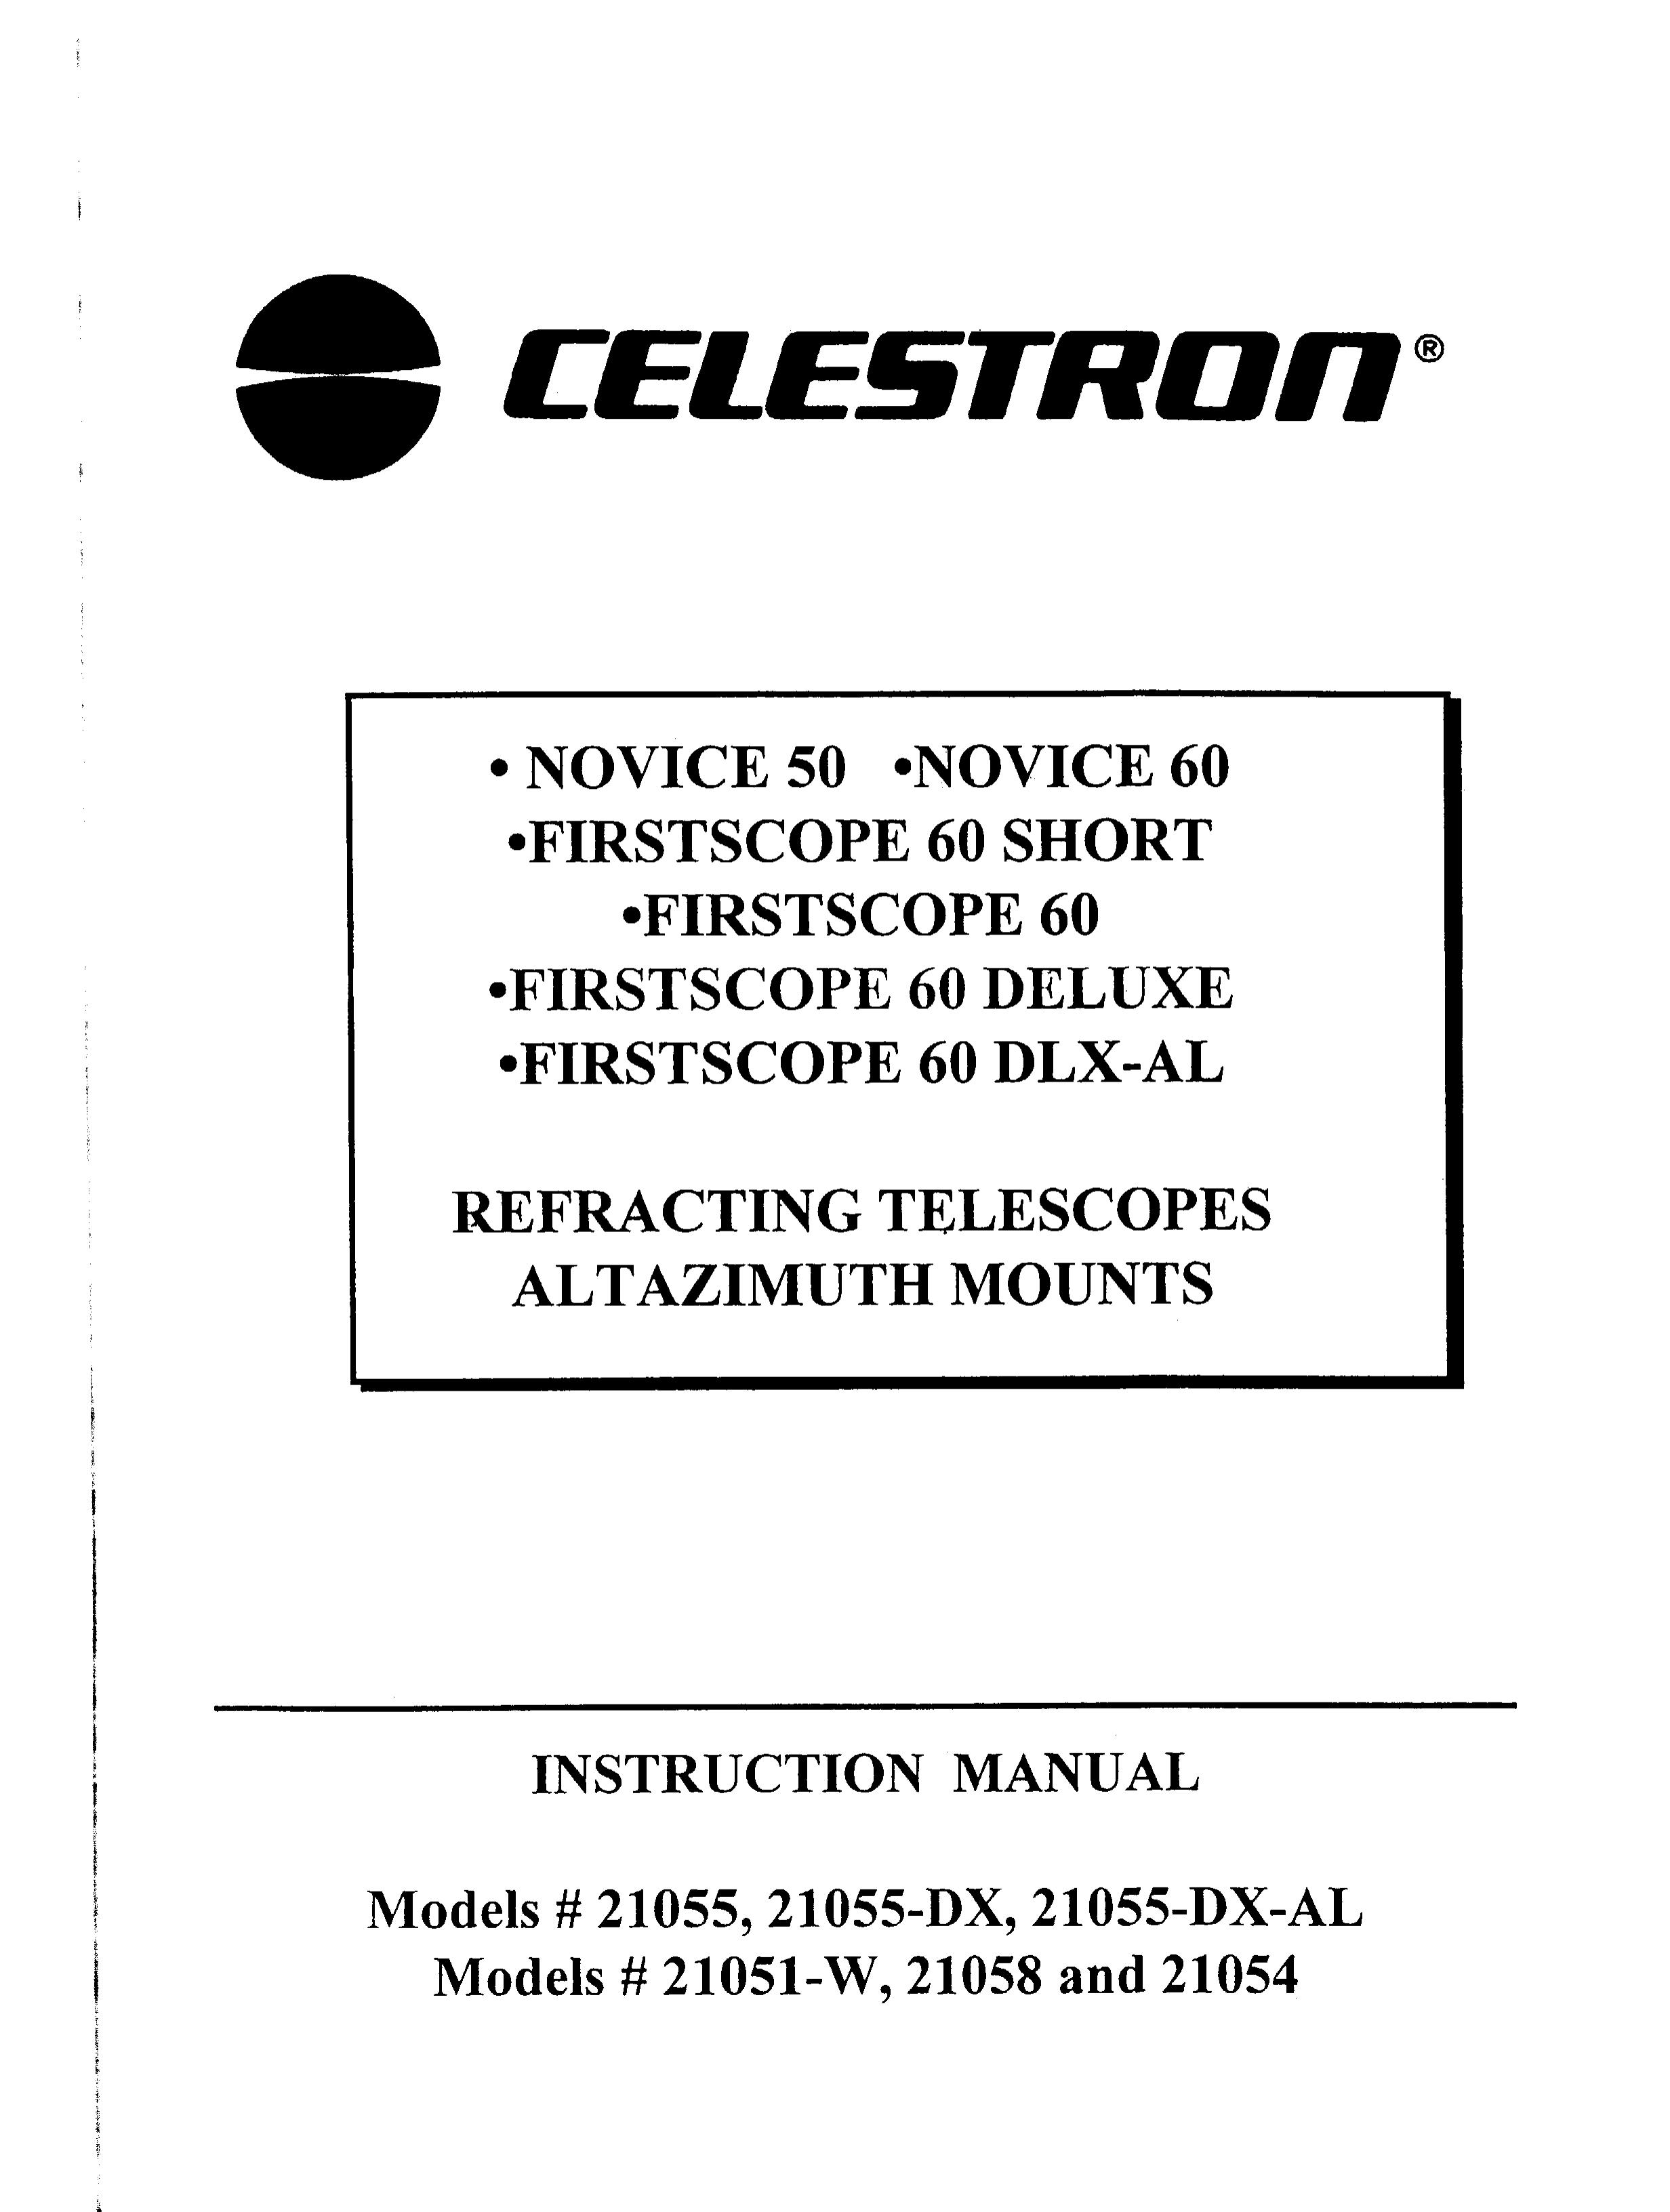 Celestron 21051-W Telescope User Manual